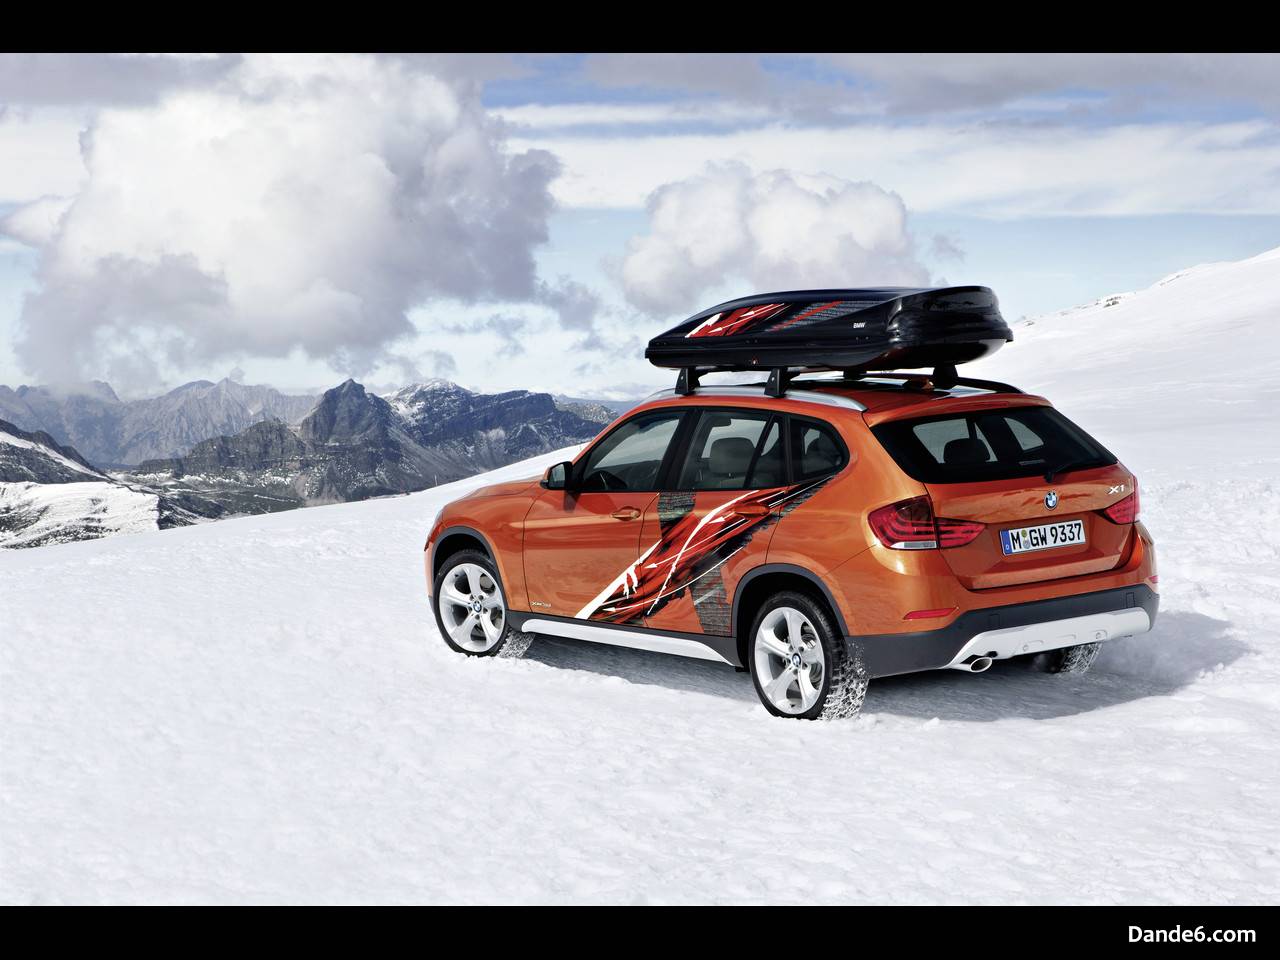 2013 BMW X1 Edition Powder Ride